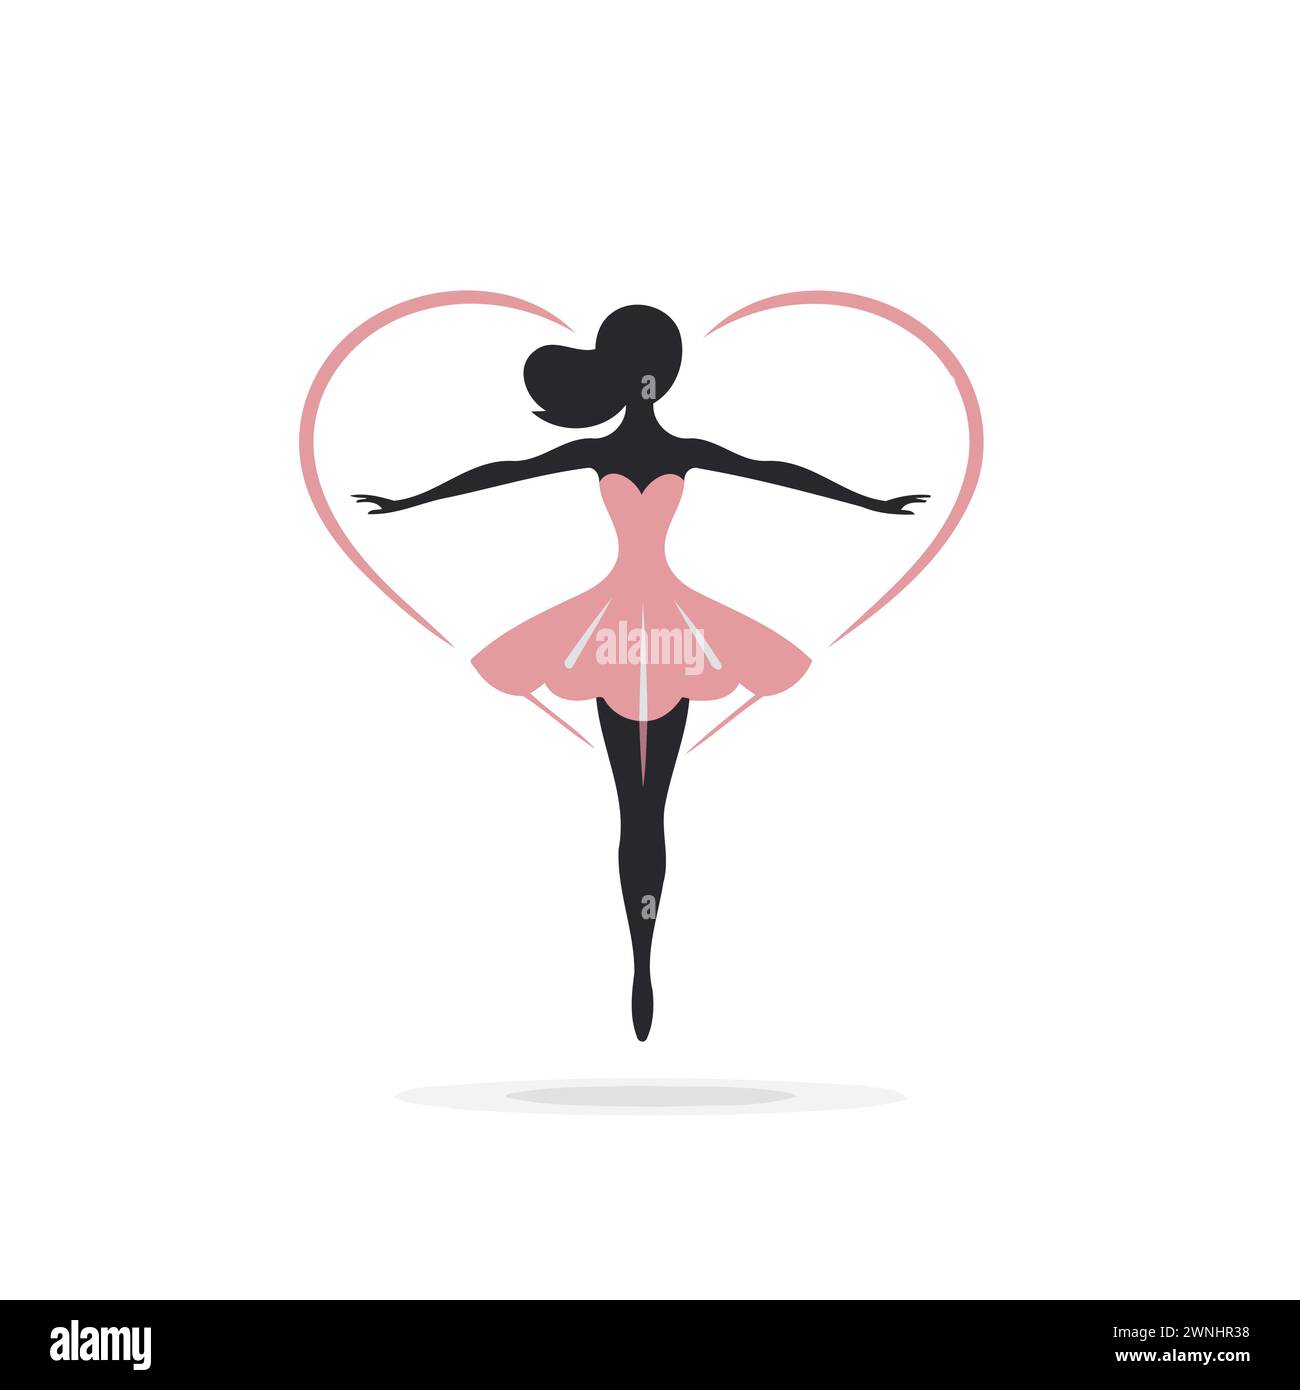 Dance Clipart-silhouette of a ballerina in a pink tutu